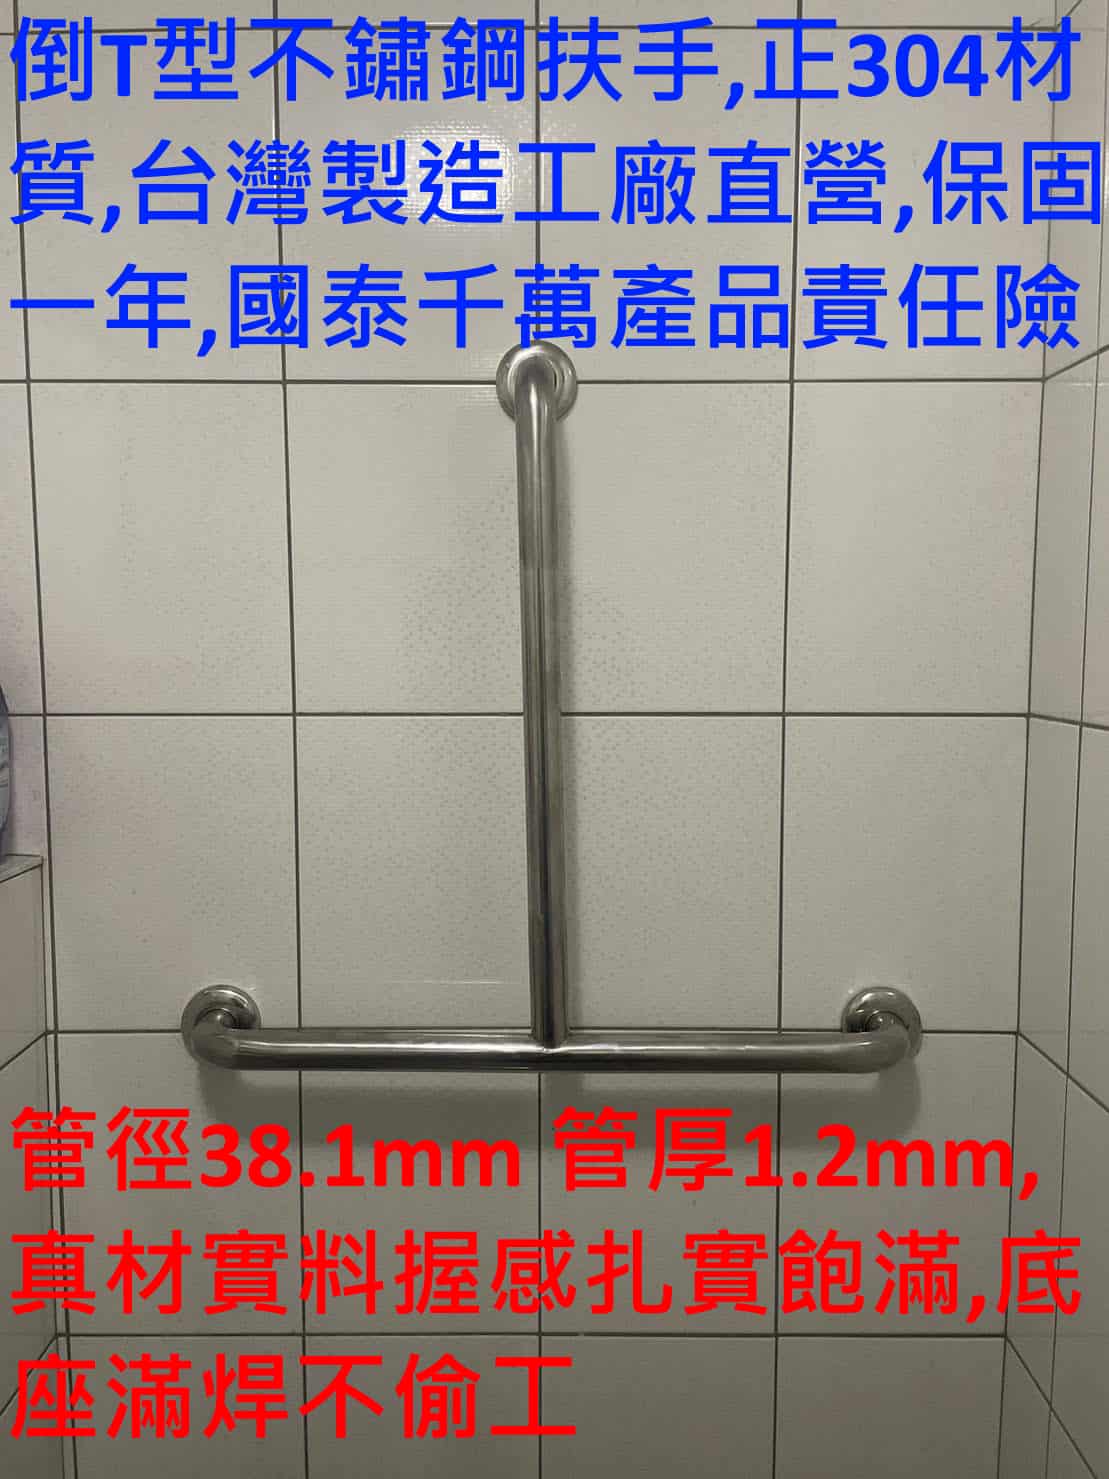 倒T型不鏽鋼安全扶手 管徑38.1mm 台灣製造